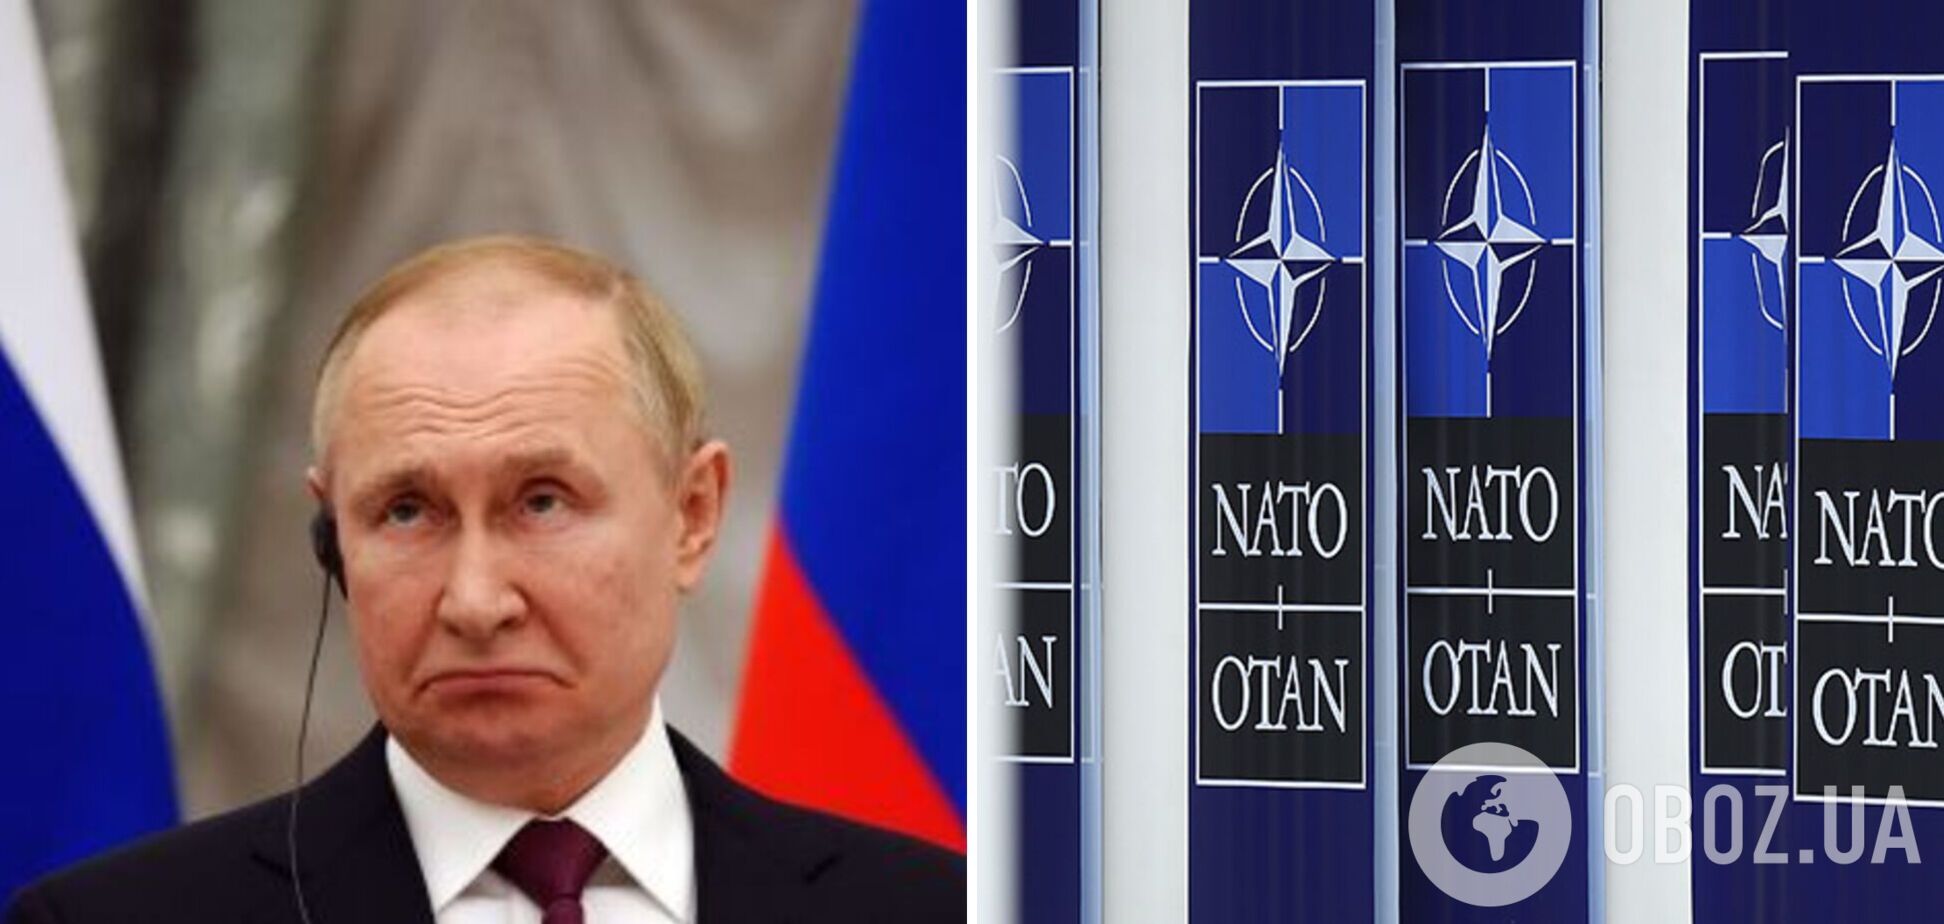 Вторгнення РФ в Україну дало поштовх зміцненню НАТО: Путін зробив блок сильнішим – WP